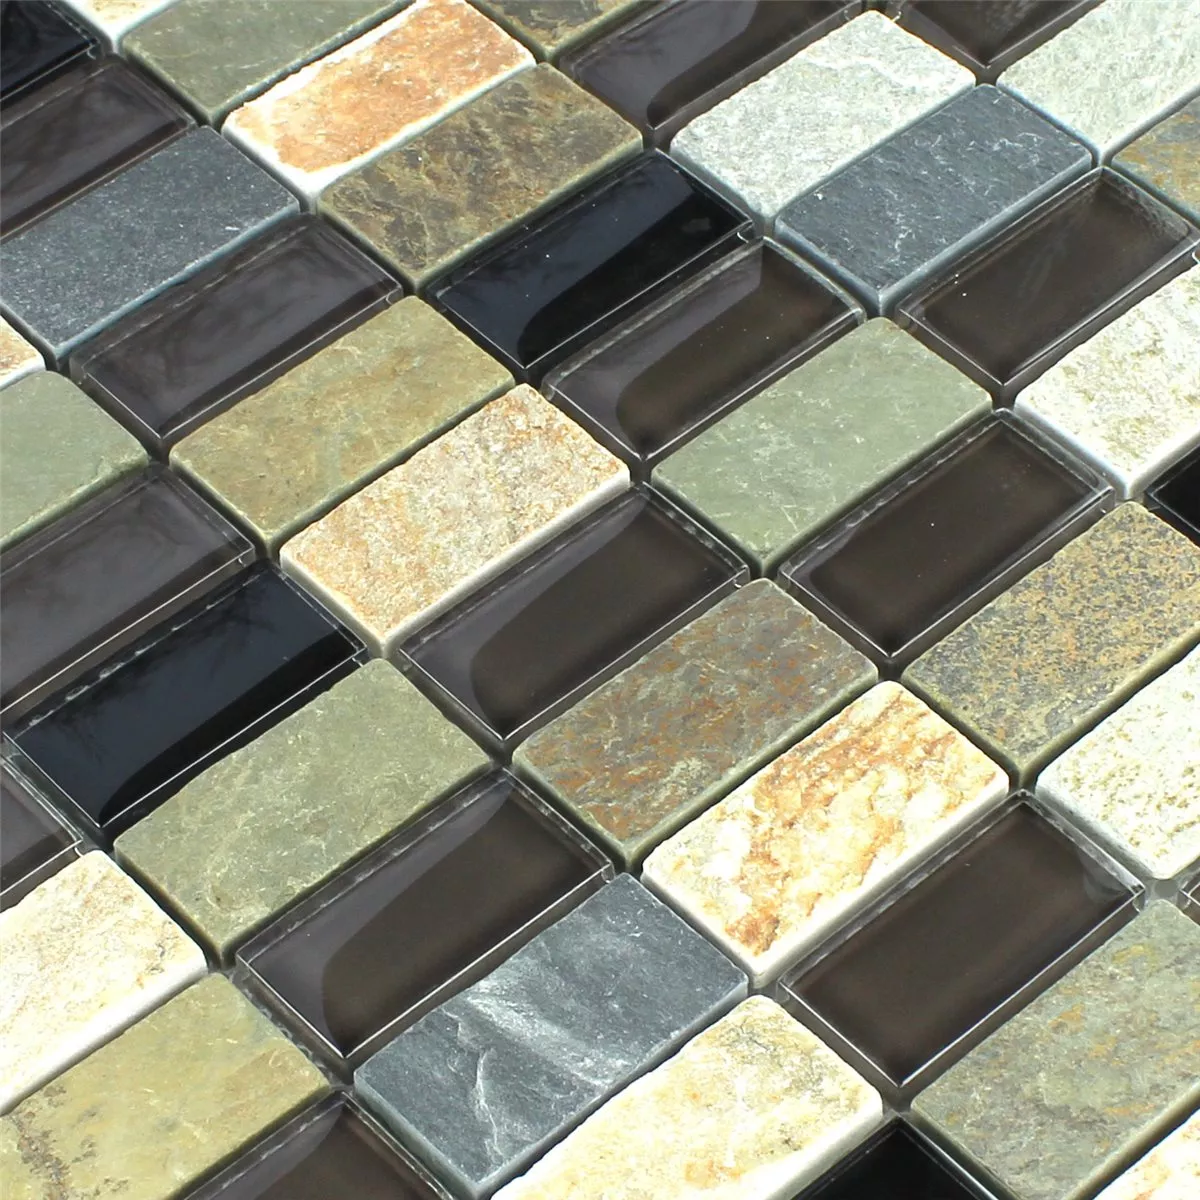 Muster von Mosaikfliesen Glas Marmor Braun Mix 